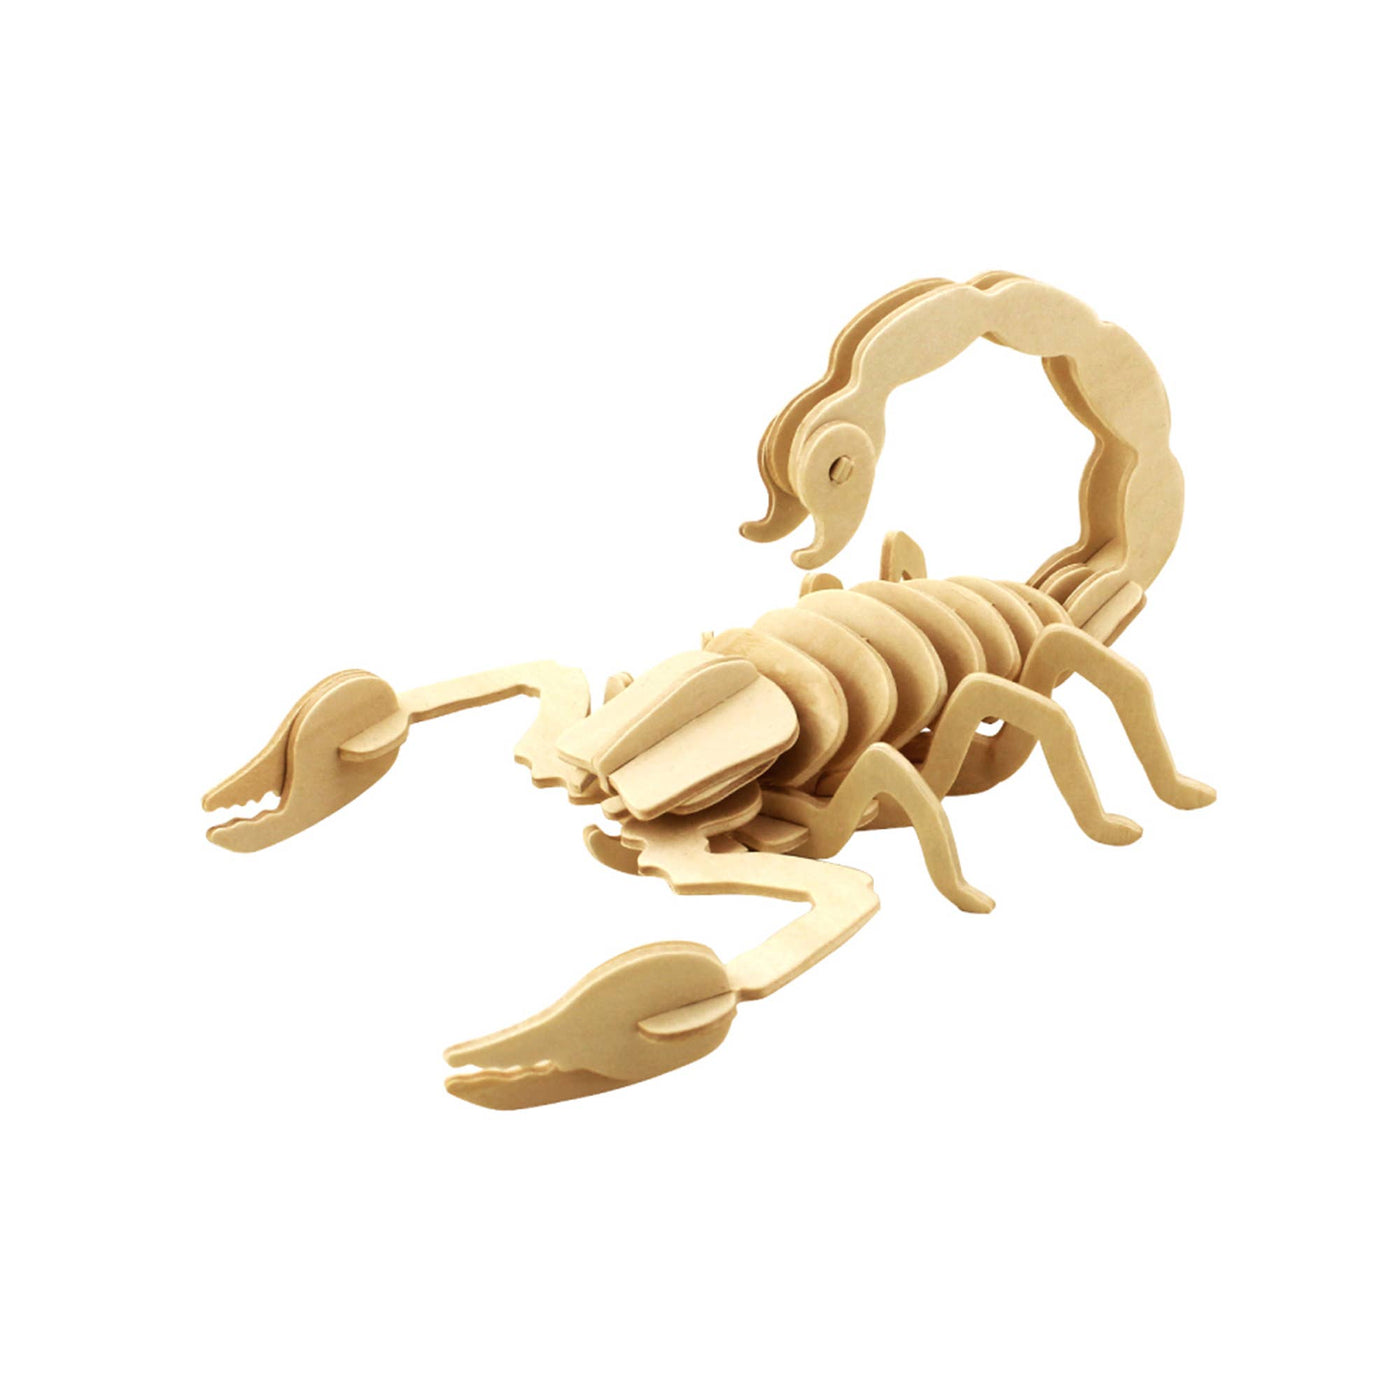 Scorpion: 3D Wooden Puzzle